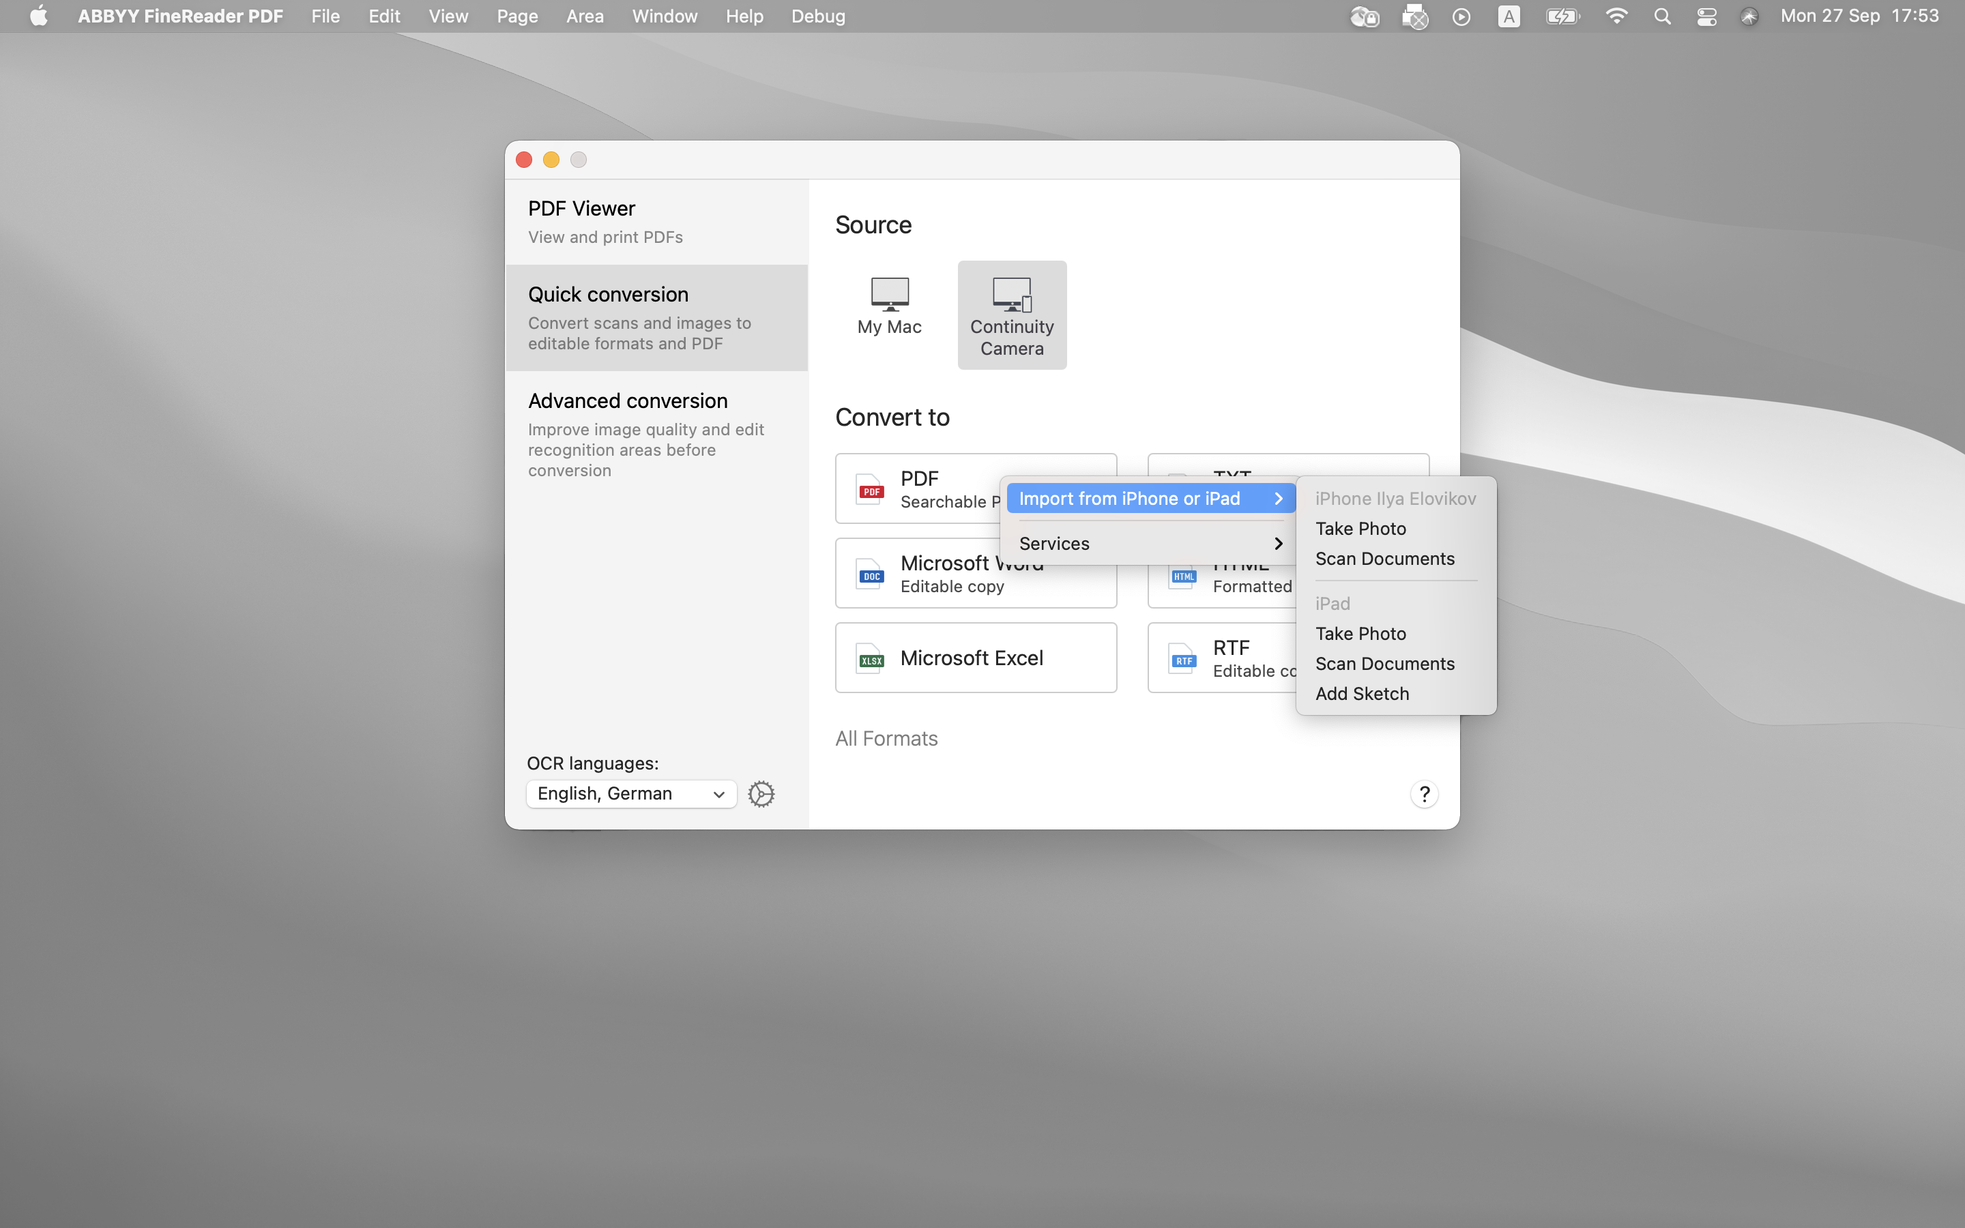 ABBYY FineReader OCR Pro for Mac